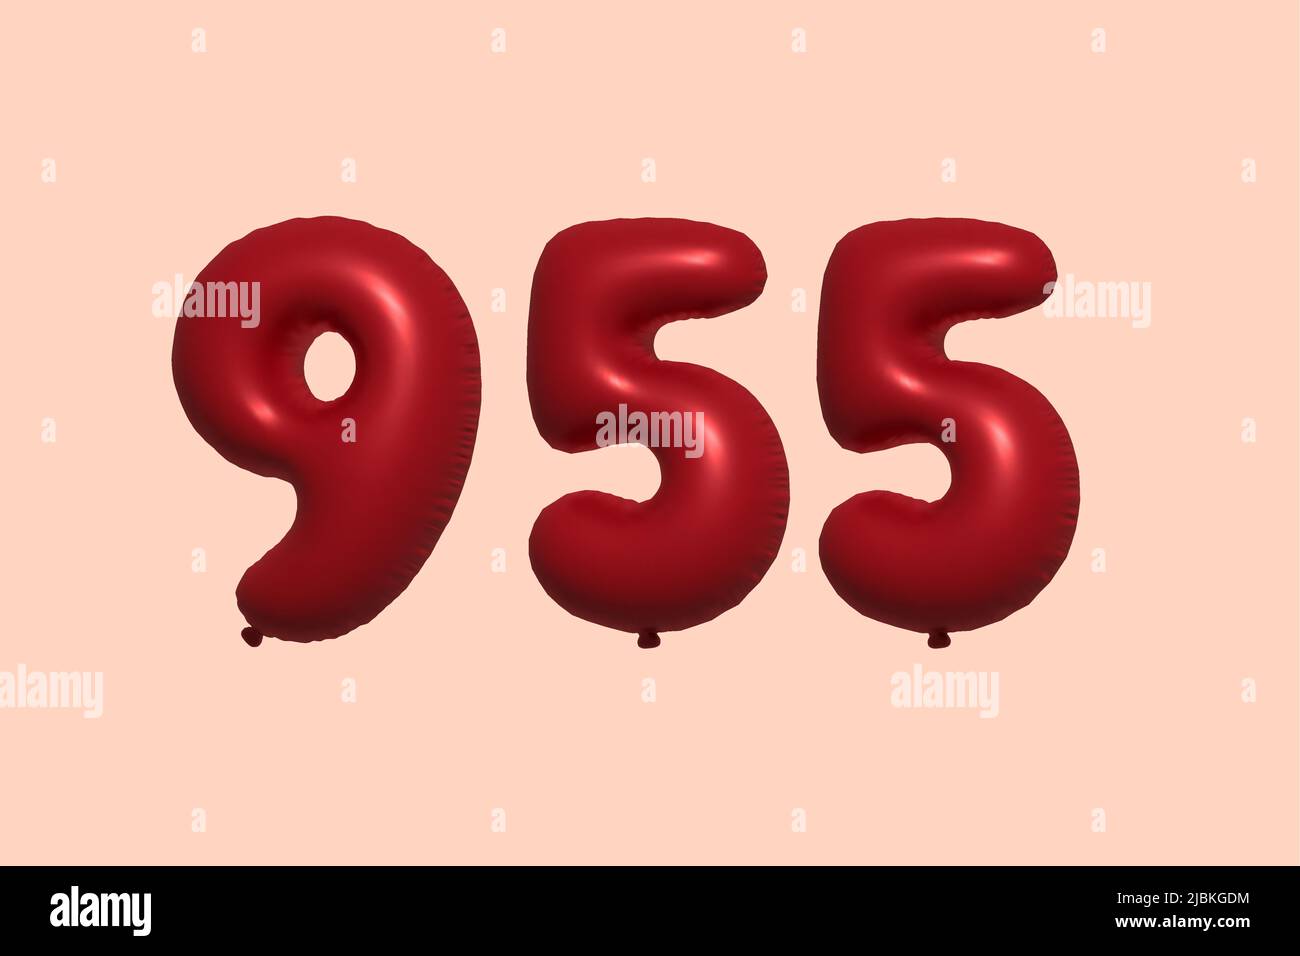 palloncino in numero 955 3d realizzato con rendering realistico di palloncino in aria metallica 3d. 3D palloncini di elio rosso per la vendita decorazione Party compleanno, celebrare anniversario, Vacanza nuziale. Illustrazione vettoriale Illustrazione Vettoriale